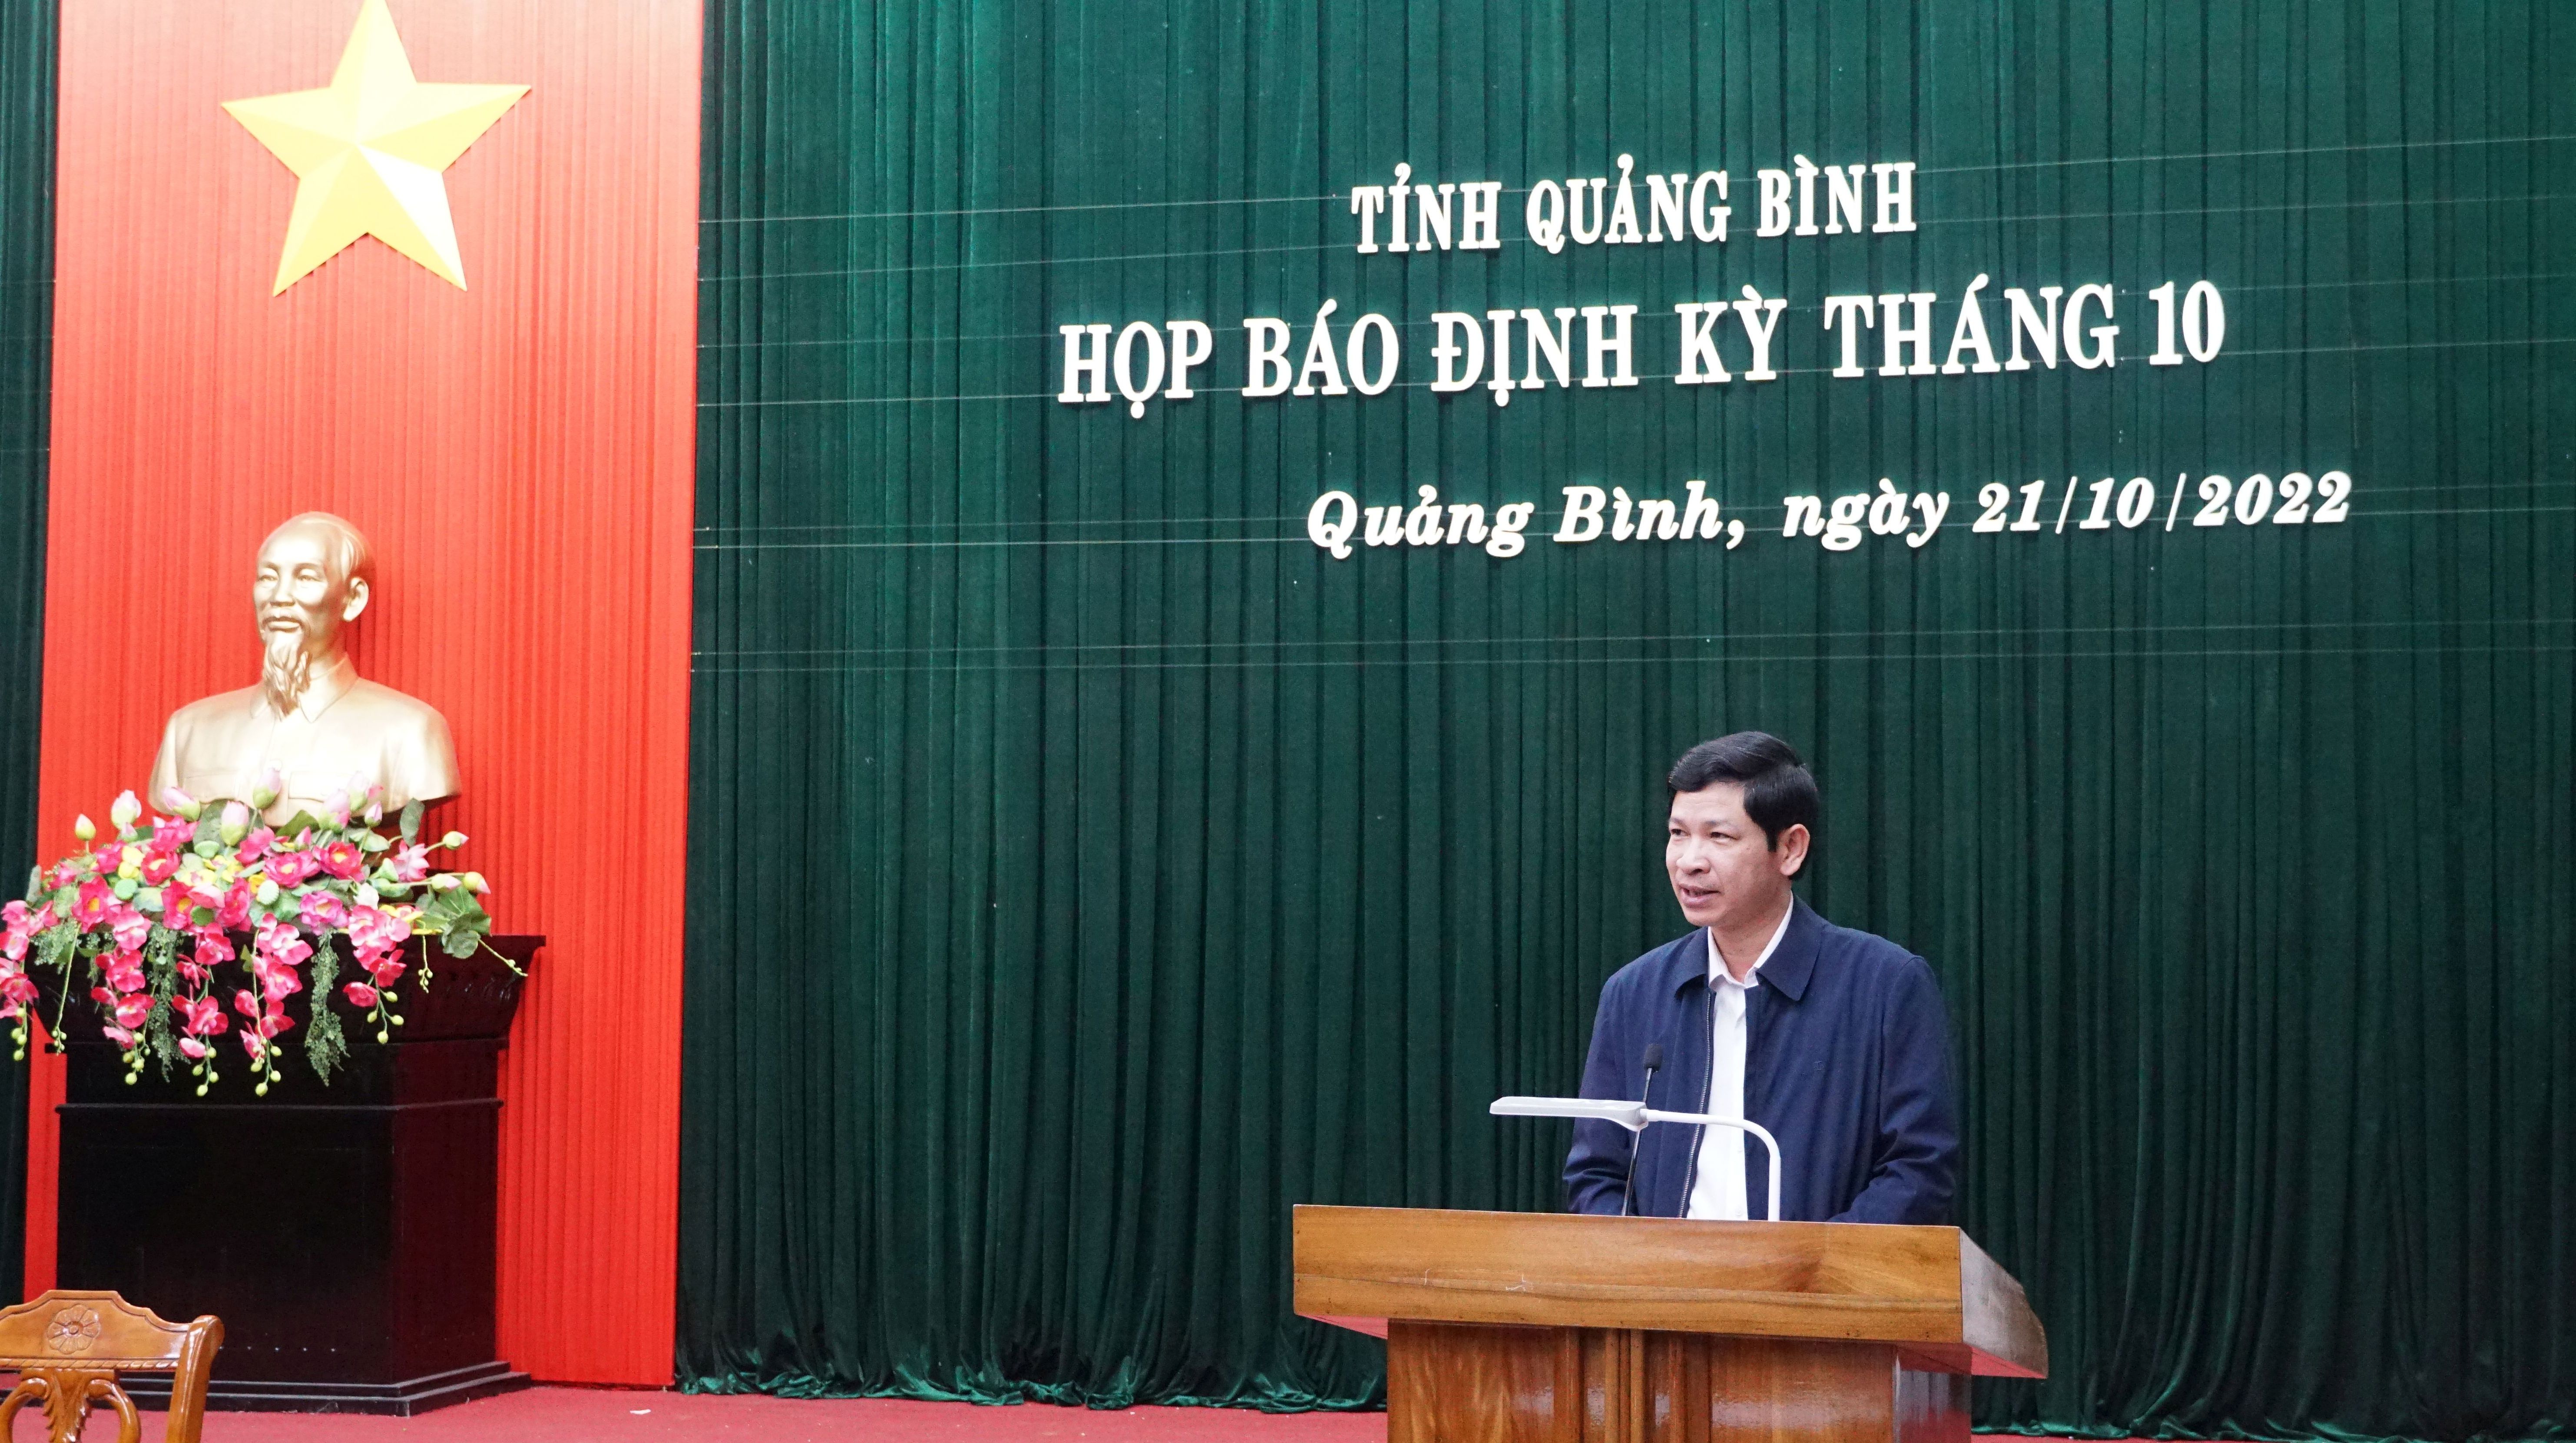 Đồng chí Phó Chủ tịch UBND tỉnh Hồ An Phong phát biểu kết luận buổi họp báo.